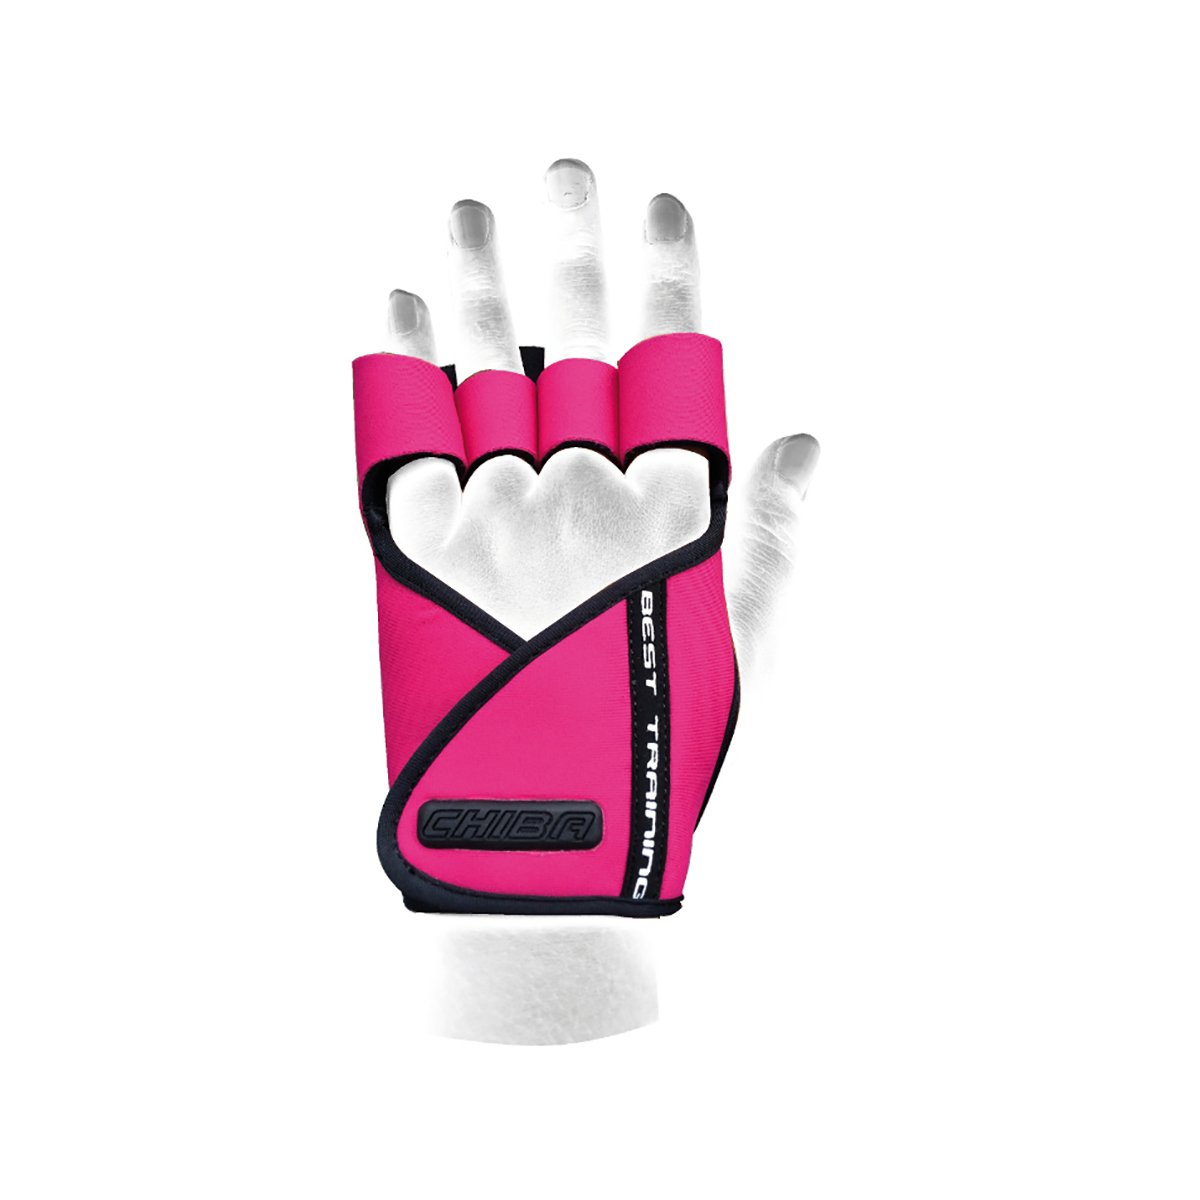 E-shop Dámske fitness rukavice Lady Motivation Pink - Chiba, veľ. XS